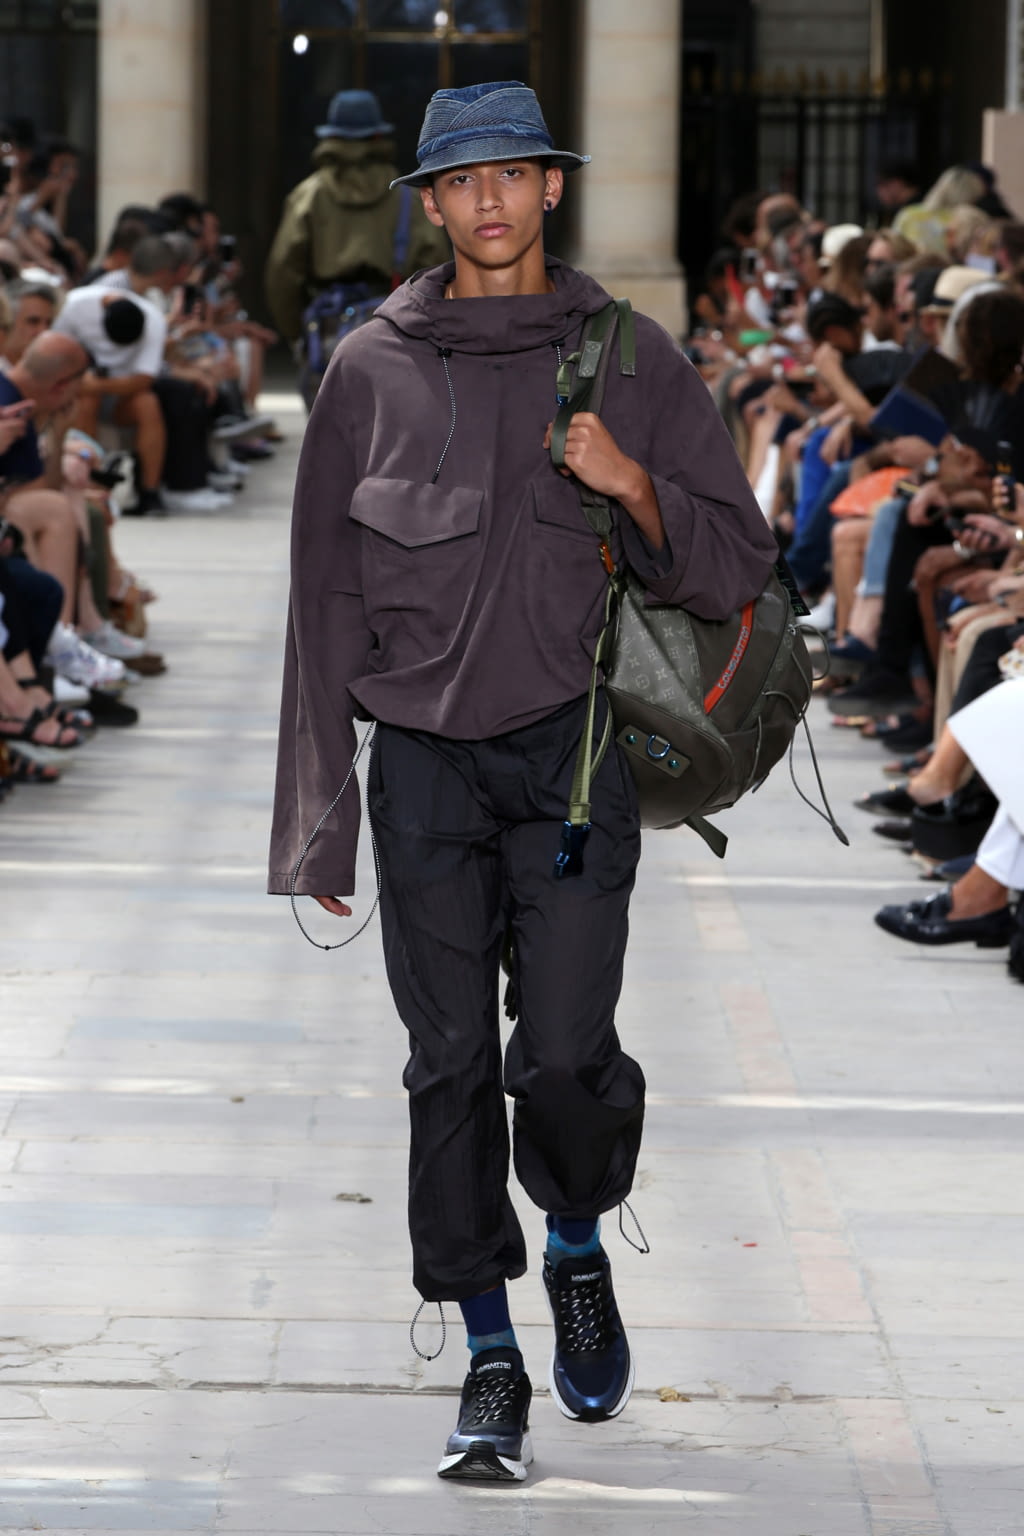 Louis Vuitton SS20 menswear #58 - Tagwalk: The Fashion Search Engine